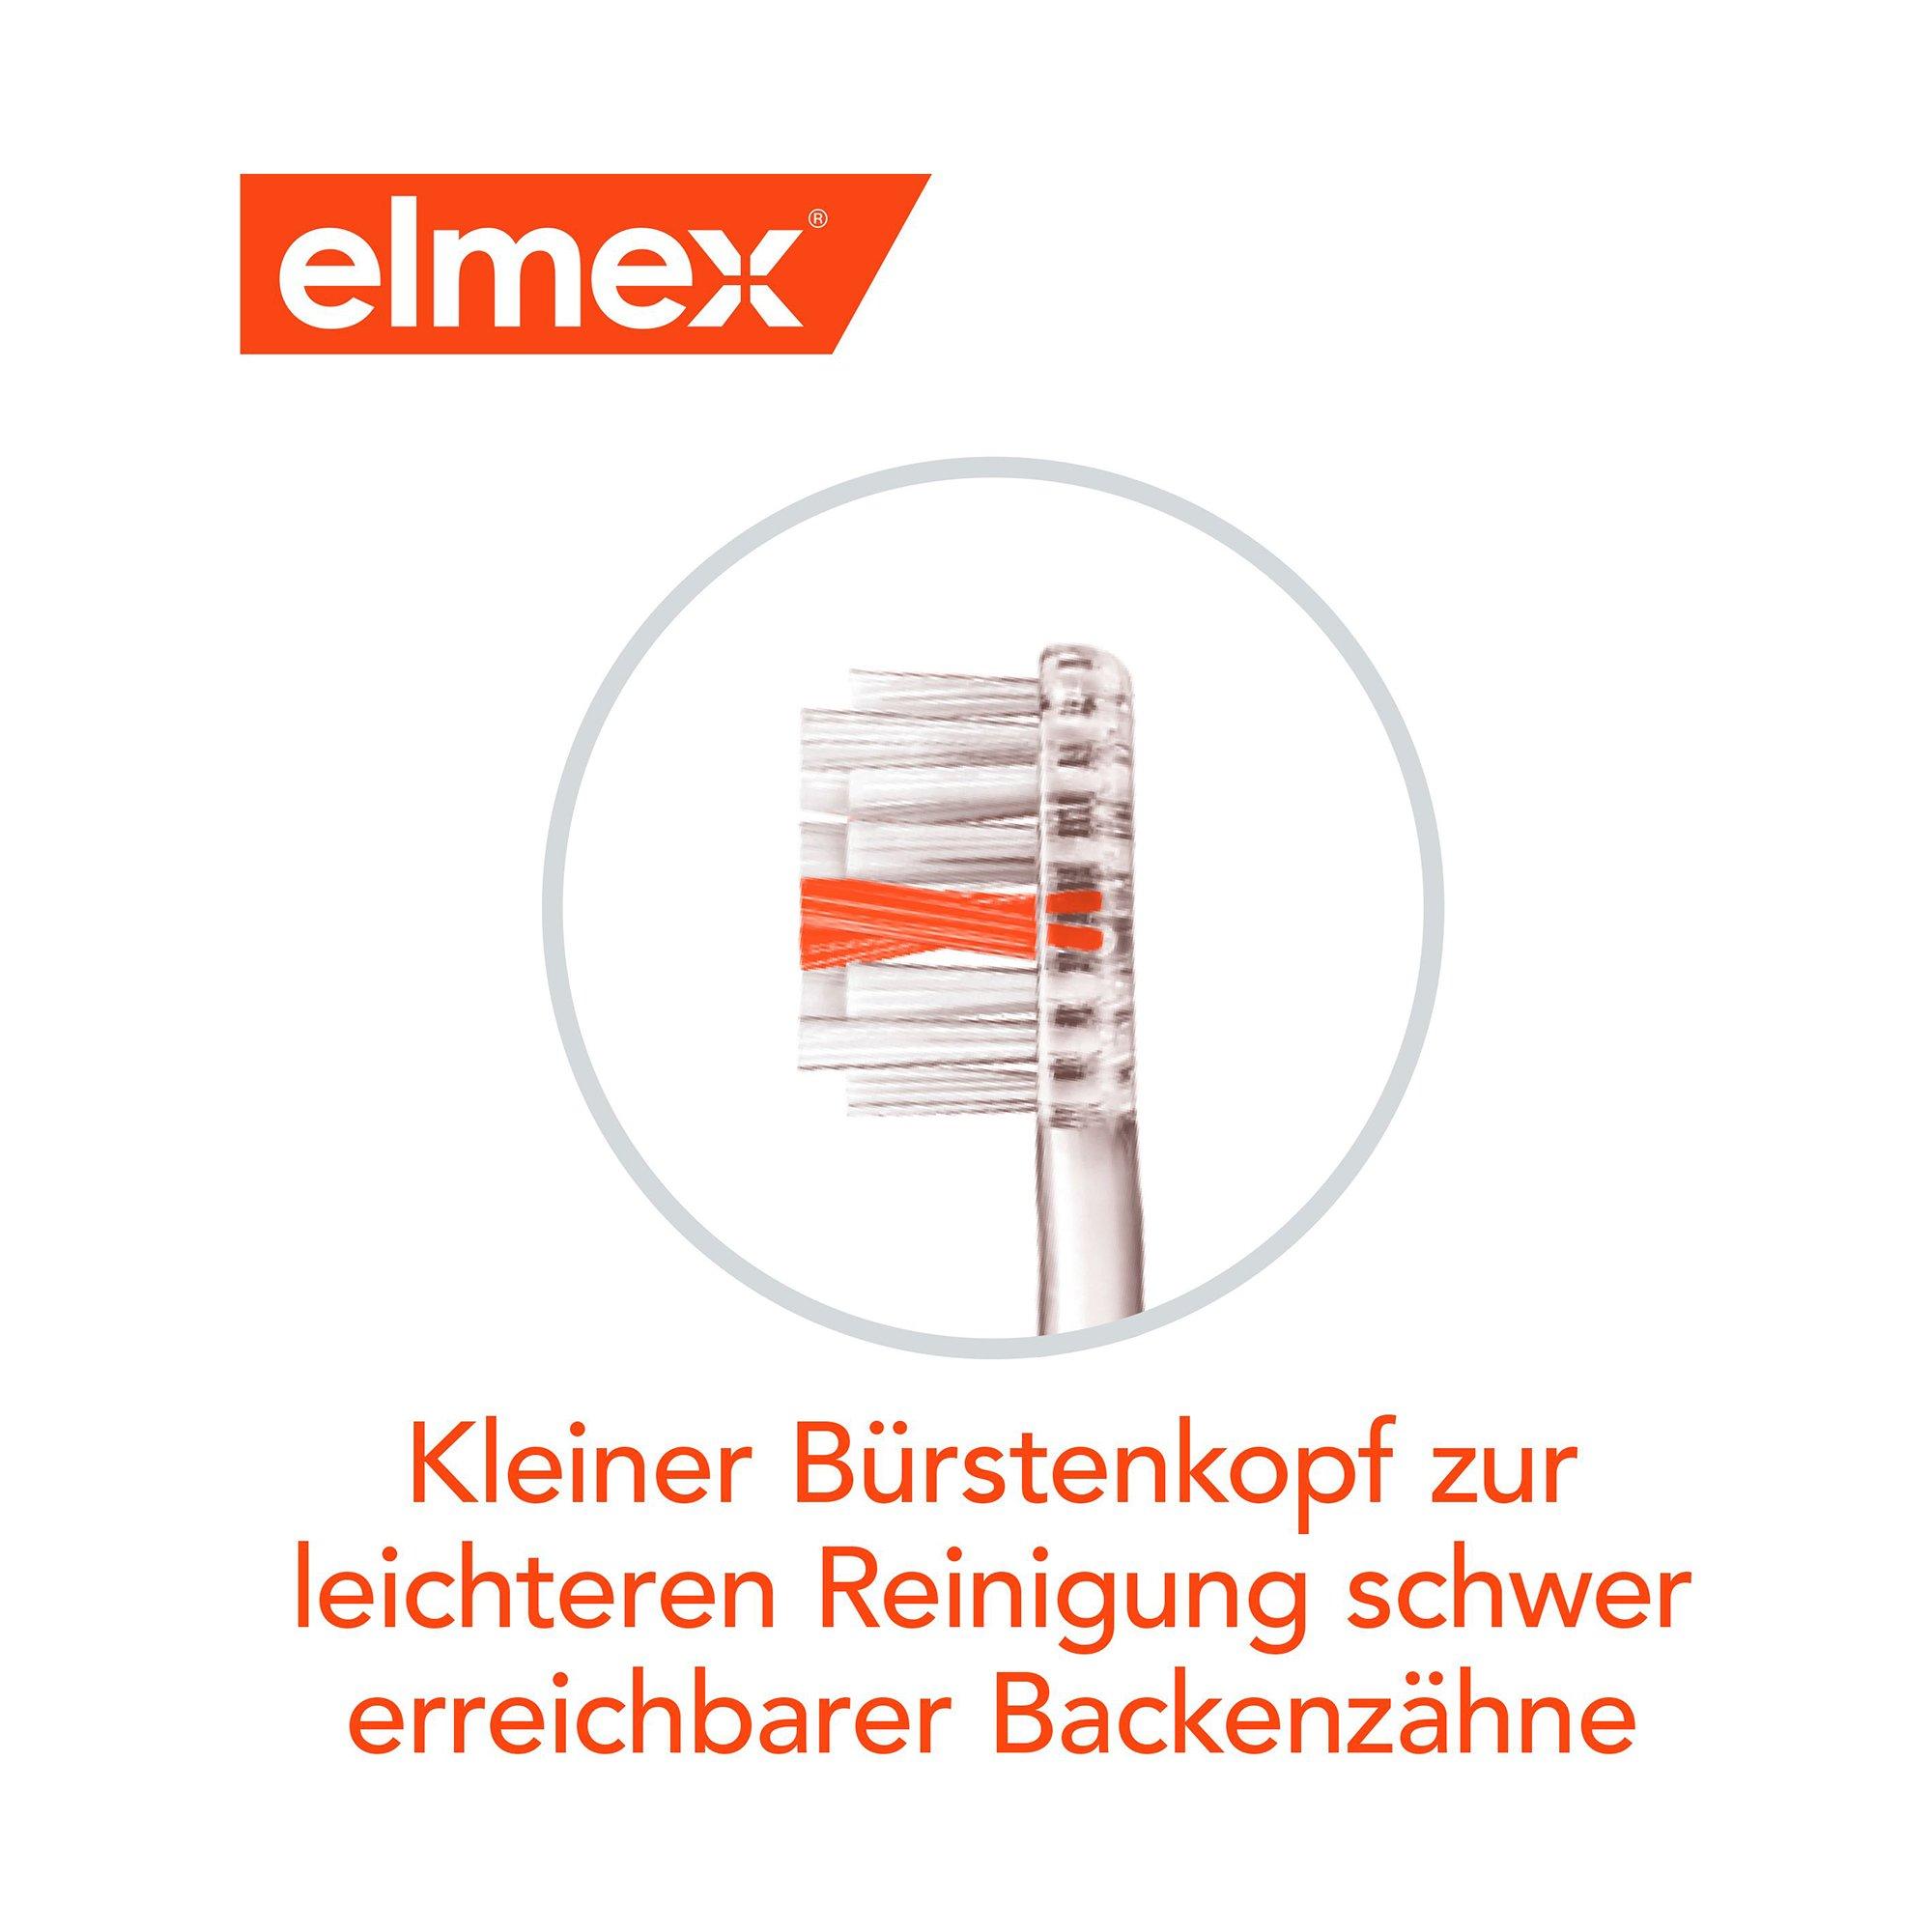 elmex INTERX MITTEL Kariesschutz Interx Mittel Zahnbürste, Gründliche Reinigung Bis In Die Zahnzwischenräume, Duo 